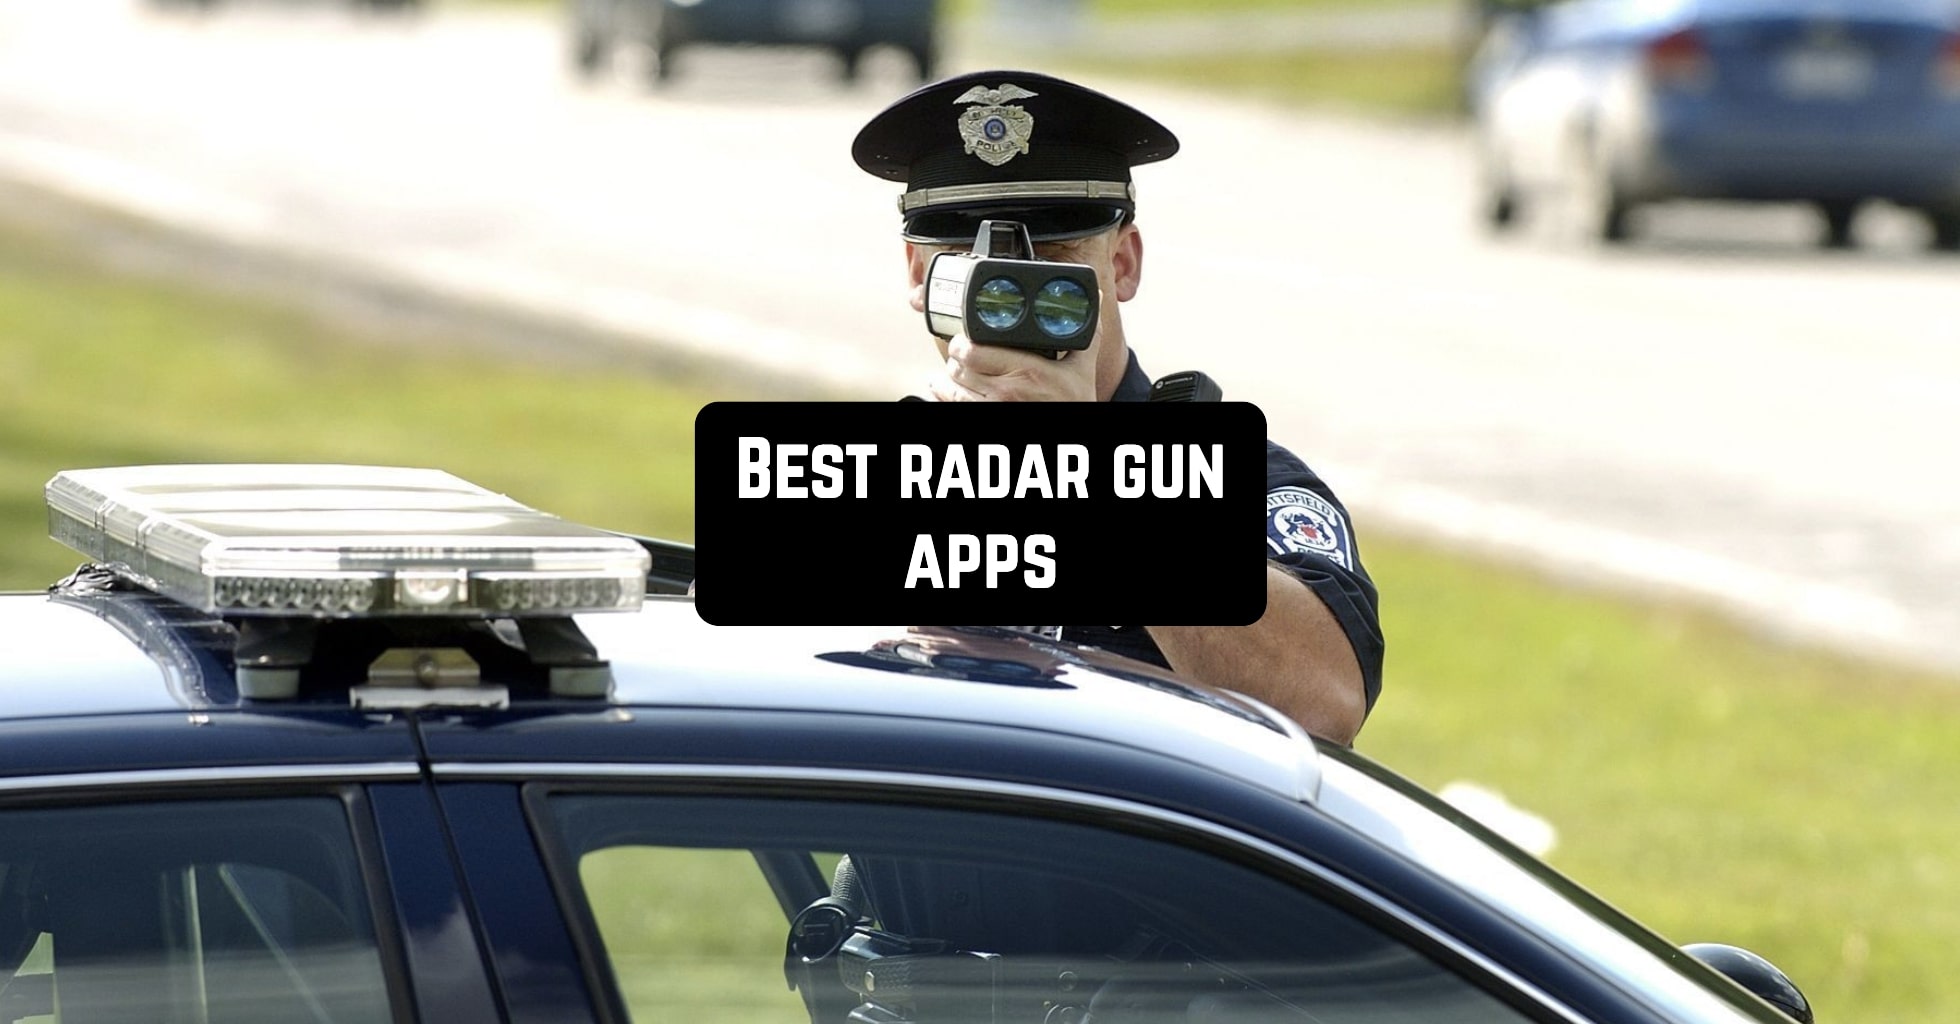 Best radar gun apps